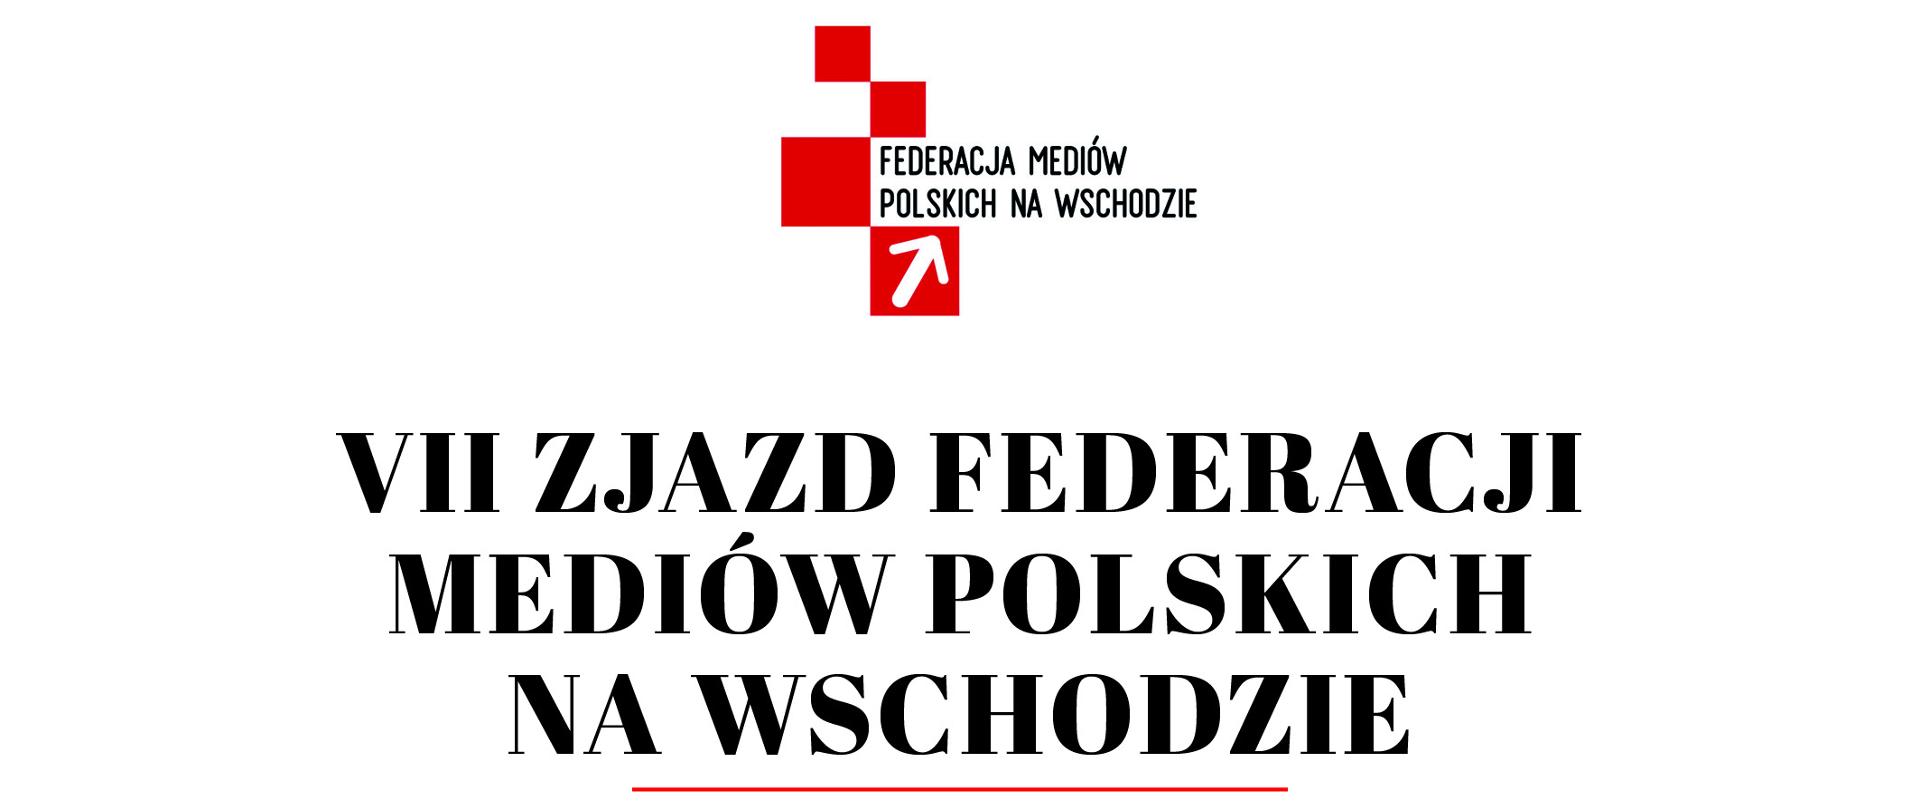 VII Zjazd Federacji Mediów Polskich na Wschodzie